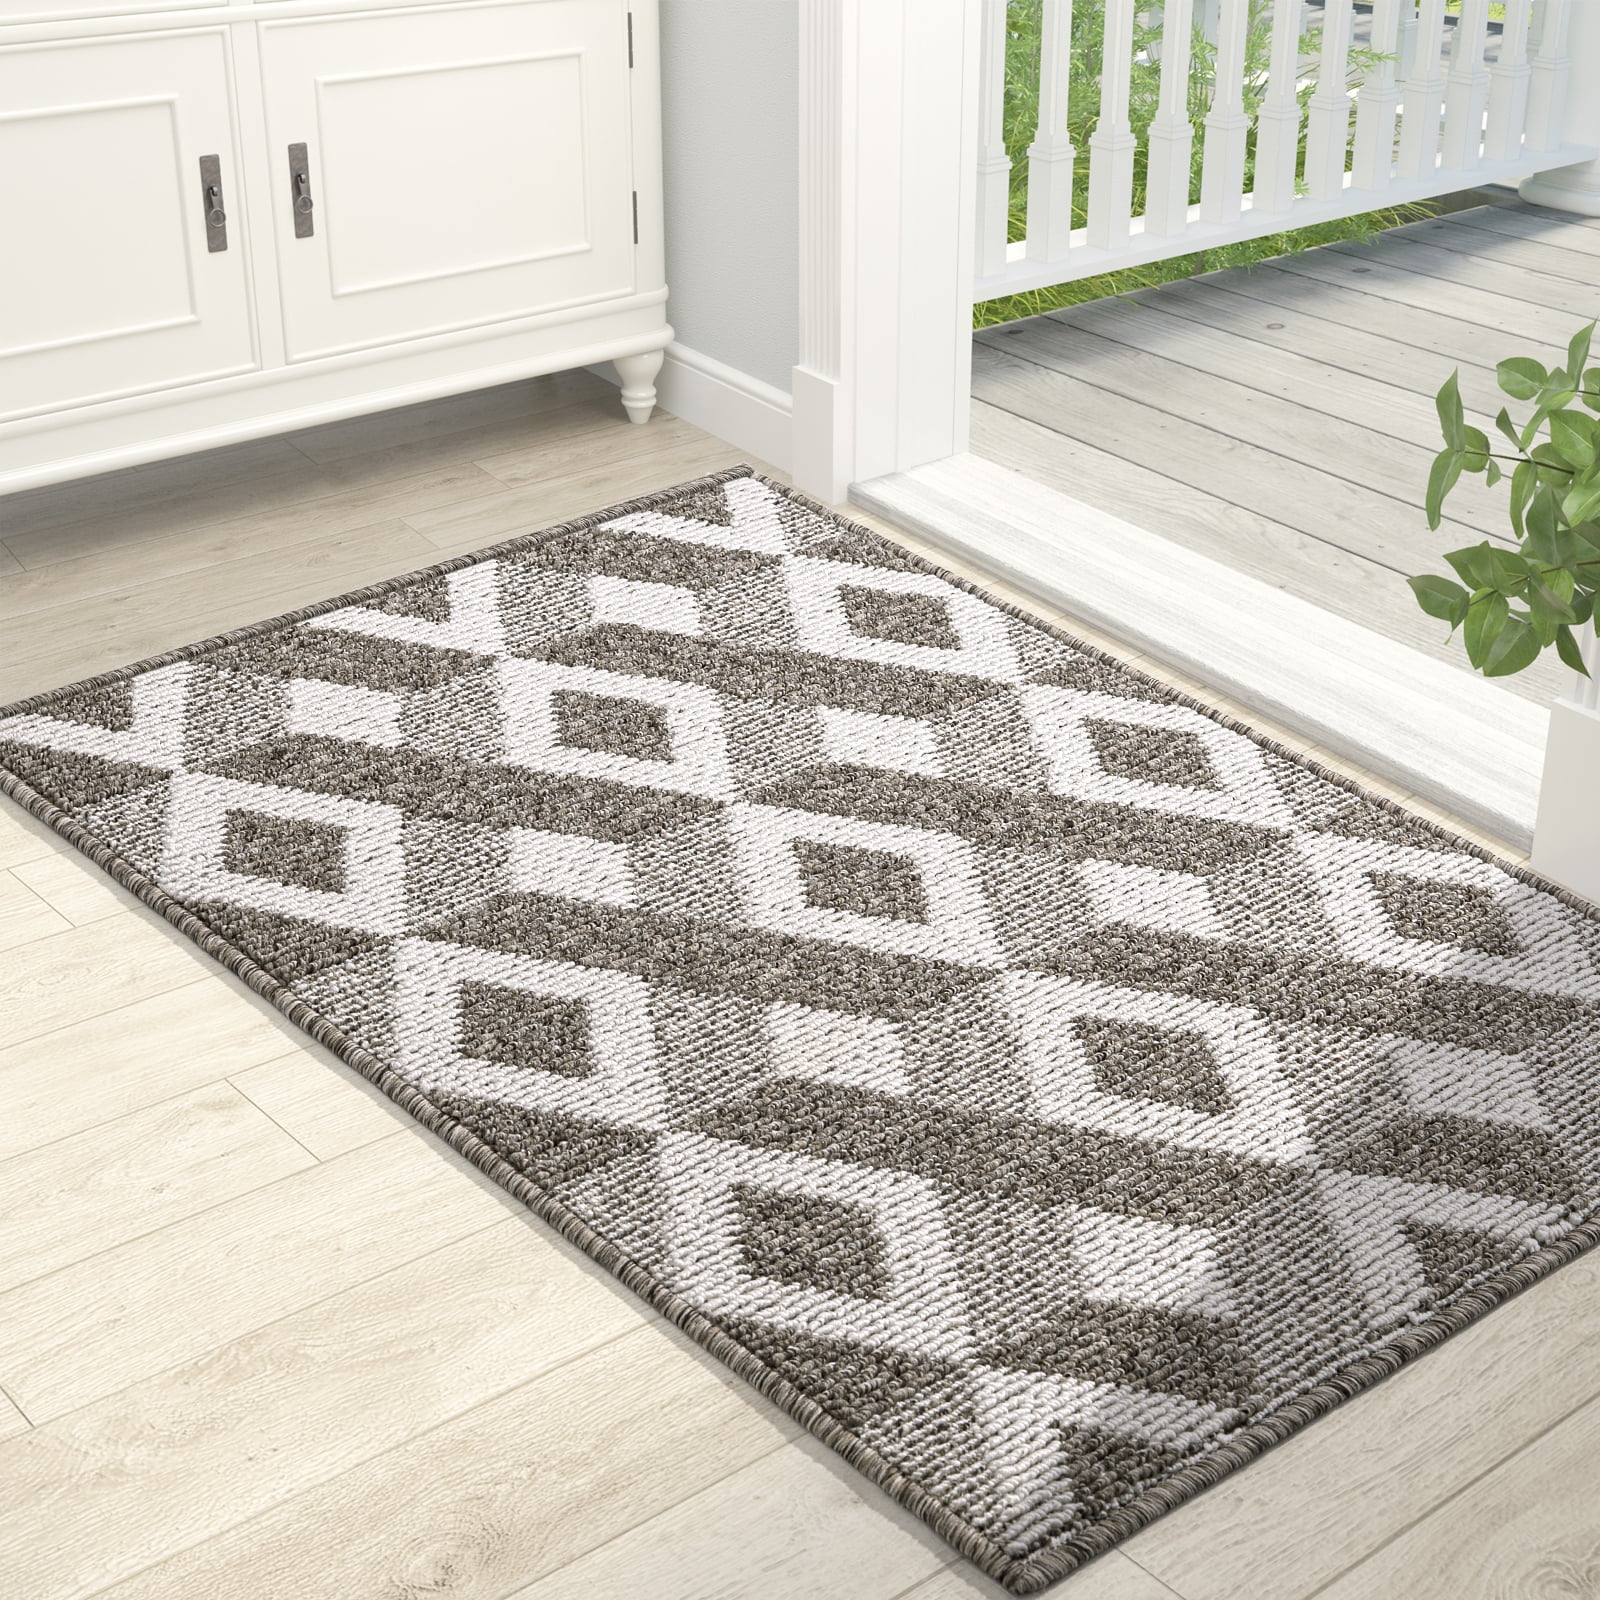 DEXI Front Door Mat for Home Entrance, 20X32 Non-Slip Absorbent Floor Mats  Low